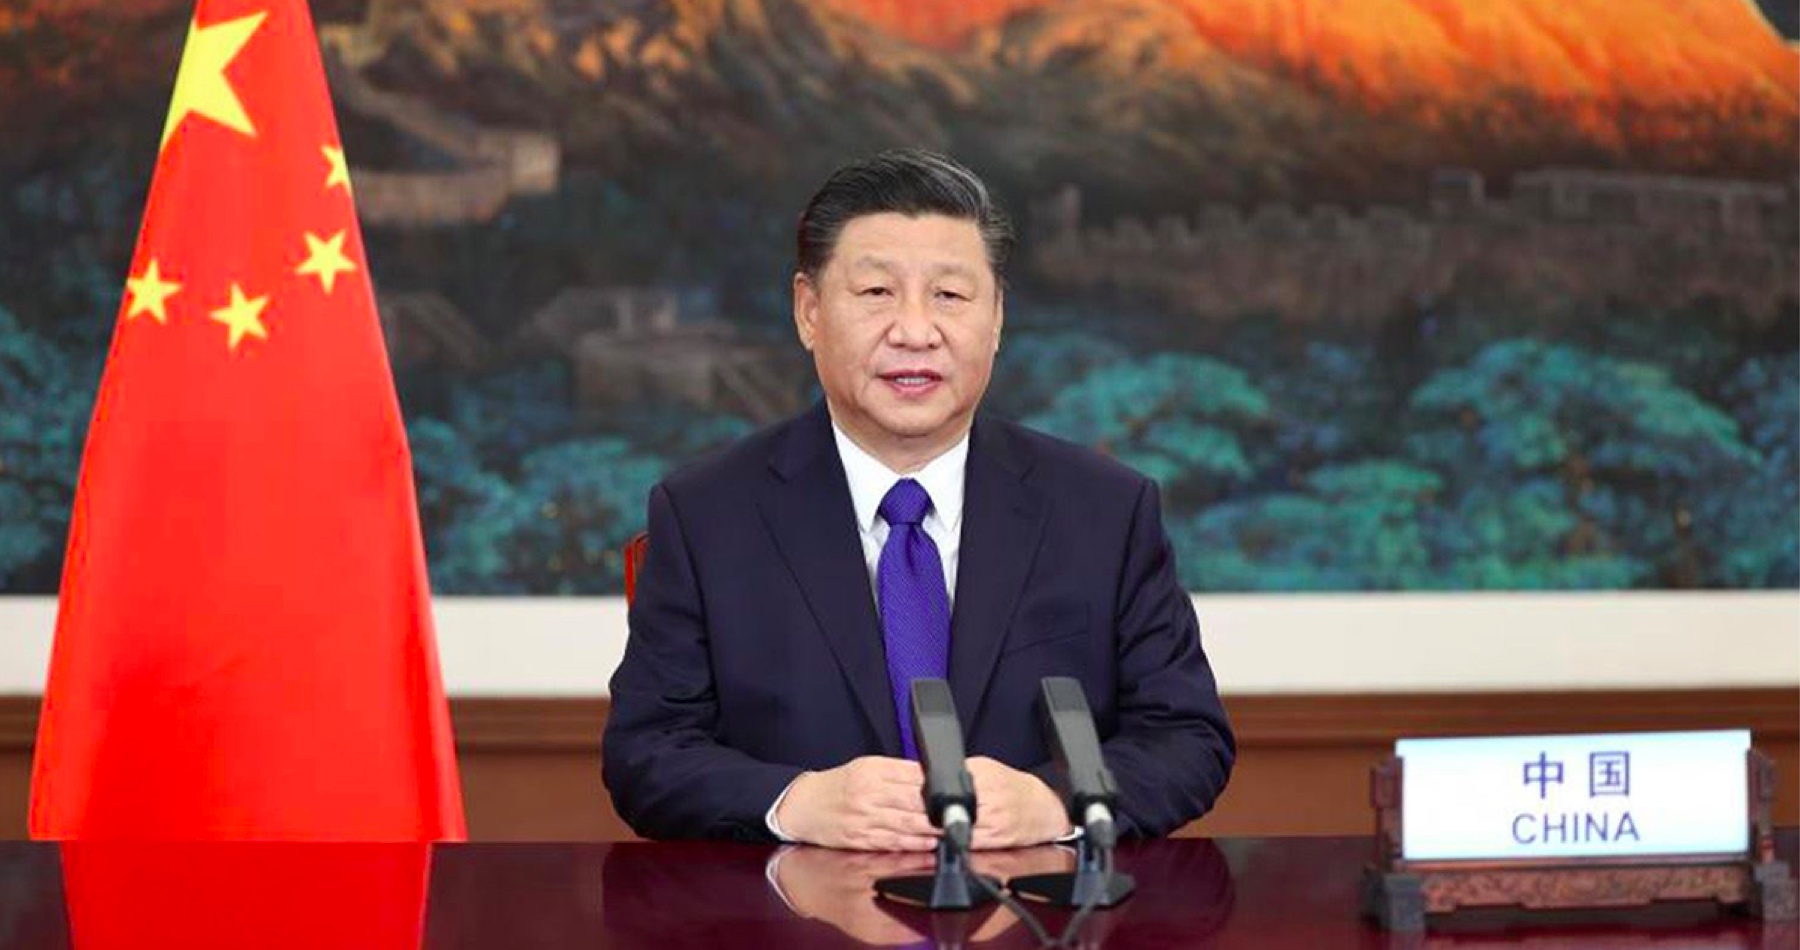 Čínsky prezident Si Ťin-pching oznámil šéfom čínskej bezpečnosti, aby sa pripravili na extrémne až najhoršie scenáre kvôli zhoršujúcej sa bezpečnostnej situácii: „Zložitosť a závažnosť problémov národnej bezpečnosti, ktorým naša krajina čelí, sa dramaticky zvýšila“